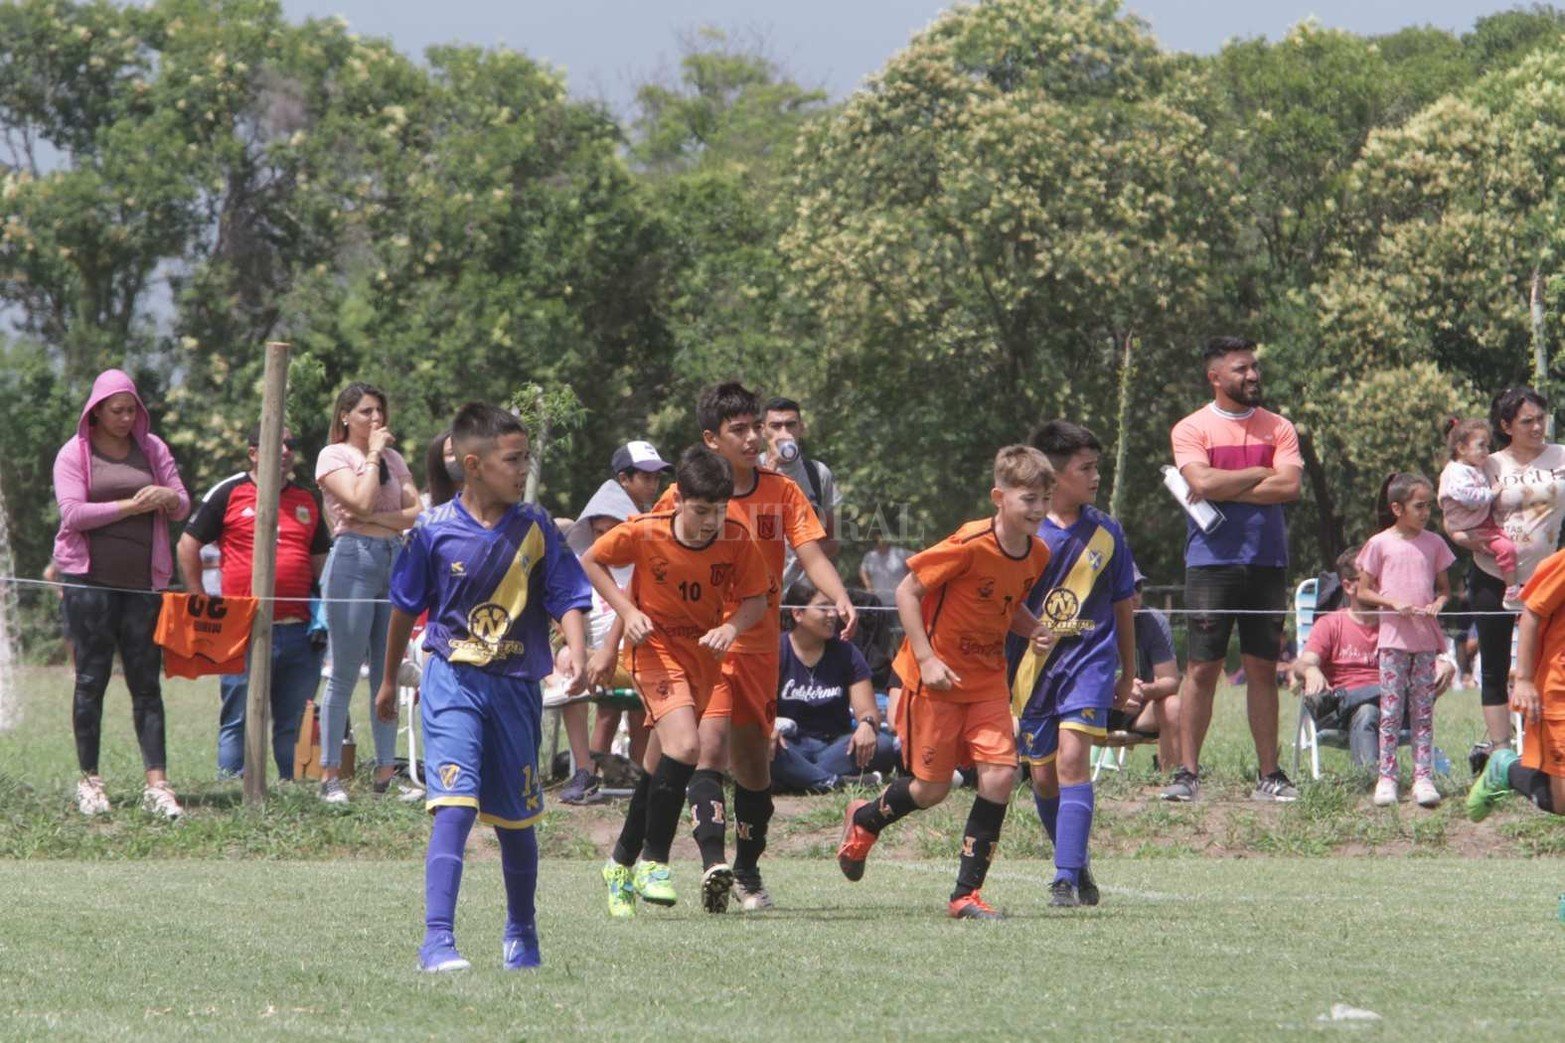 Organizado por el club Cosmos, se desarrolla la edición 11° edición del Torneo Talentos de fútbol infanto juvenil.